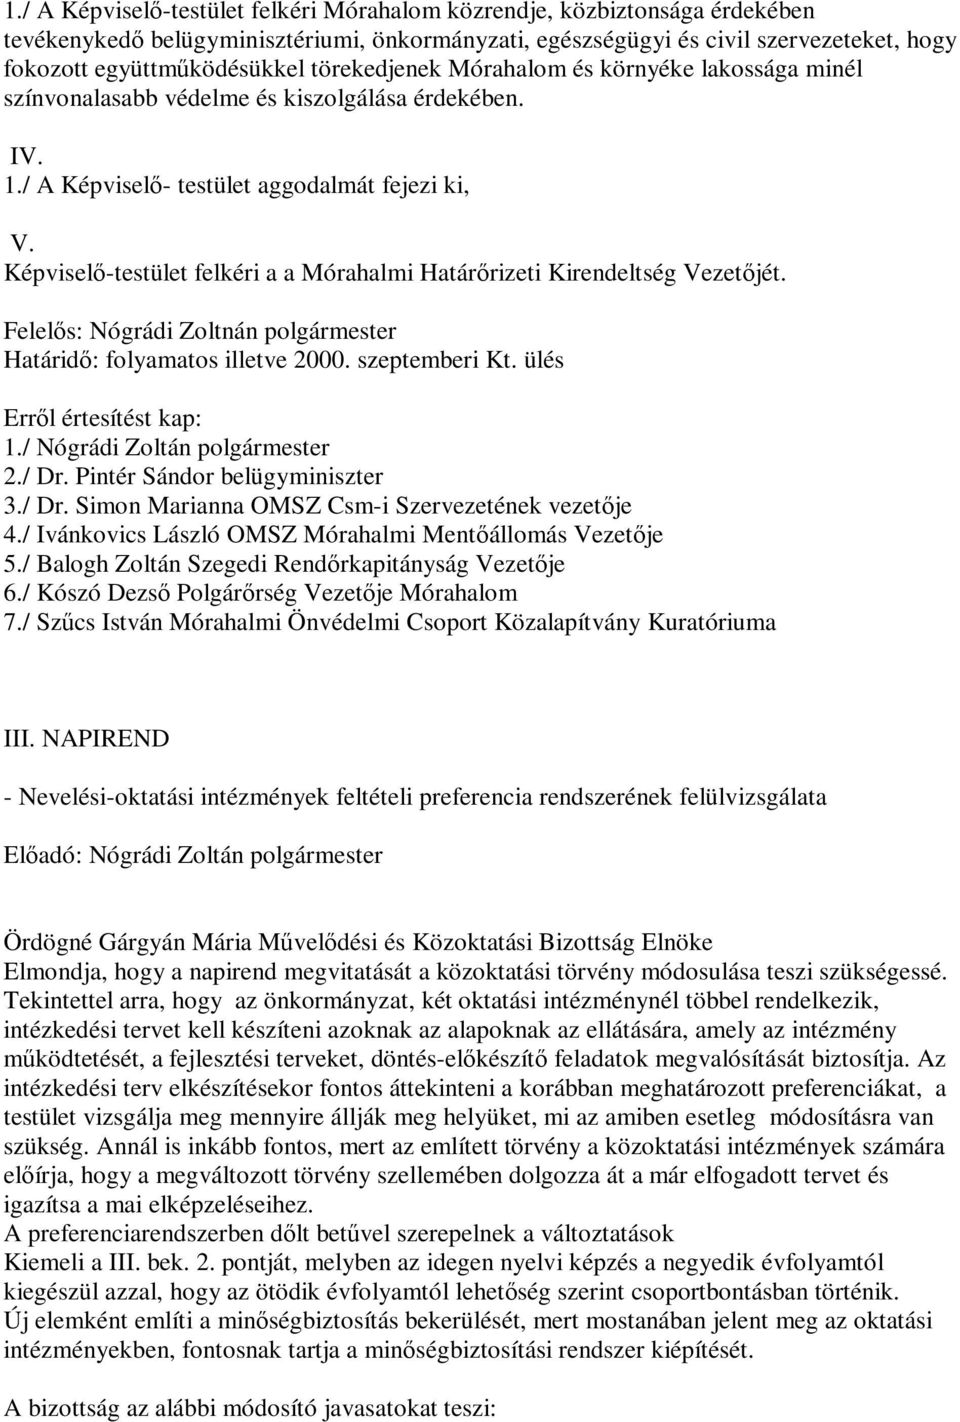 Képviselő-testület felkéri a a Mórahalmi Határőrizeti Kirendeltség Vezetőjét. Felelős: Nógrádi Zoltnán polgármester Határidő: folyamatos illetve 2000. szeptemberi Kt. ülés 1.